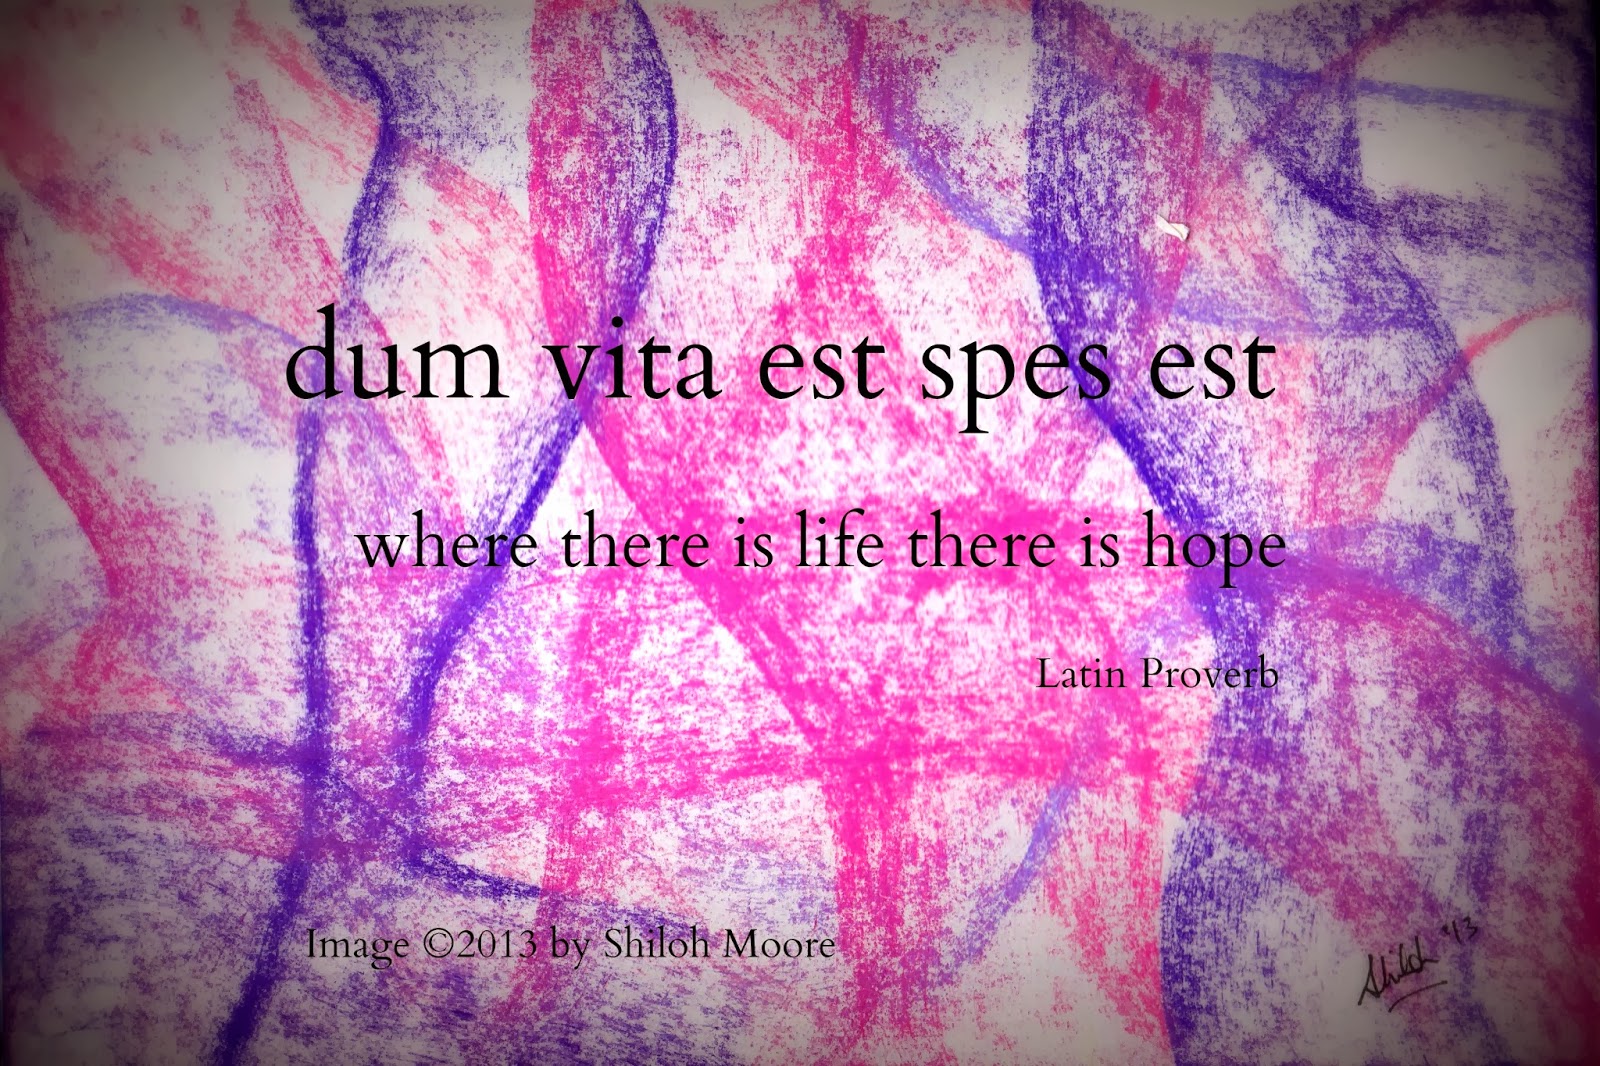 Vitae est. Dum Vita est. Talis est Vita. Where there is Life there is hope. Dum Vita est Spes est перевод на русский с латыни.